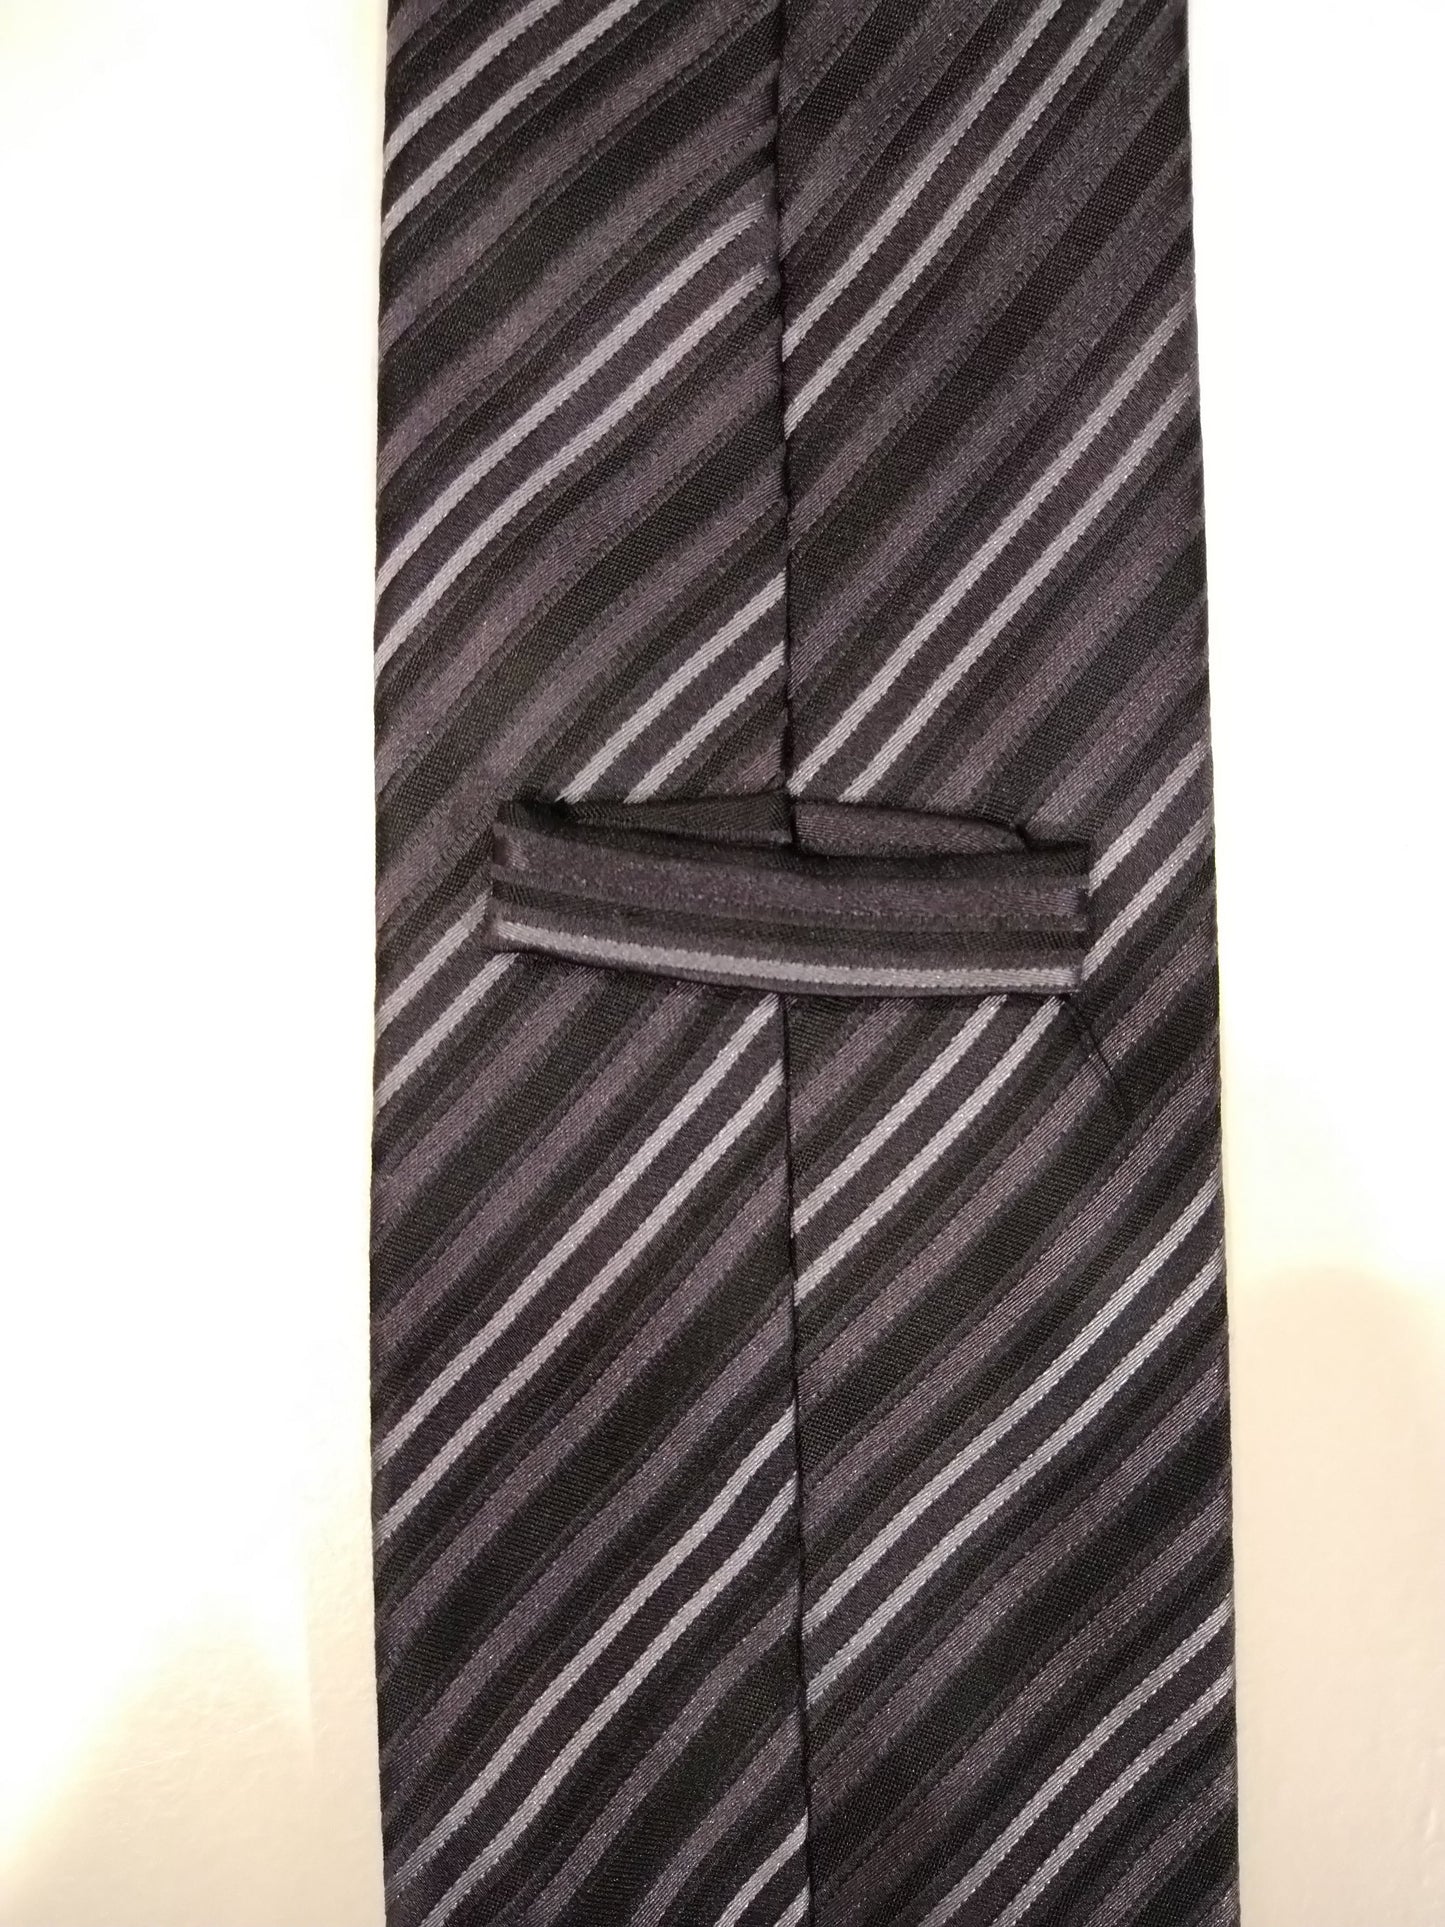 Corbata de seda. Motivo a rayas en blanco y negro